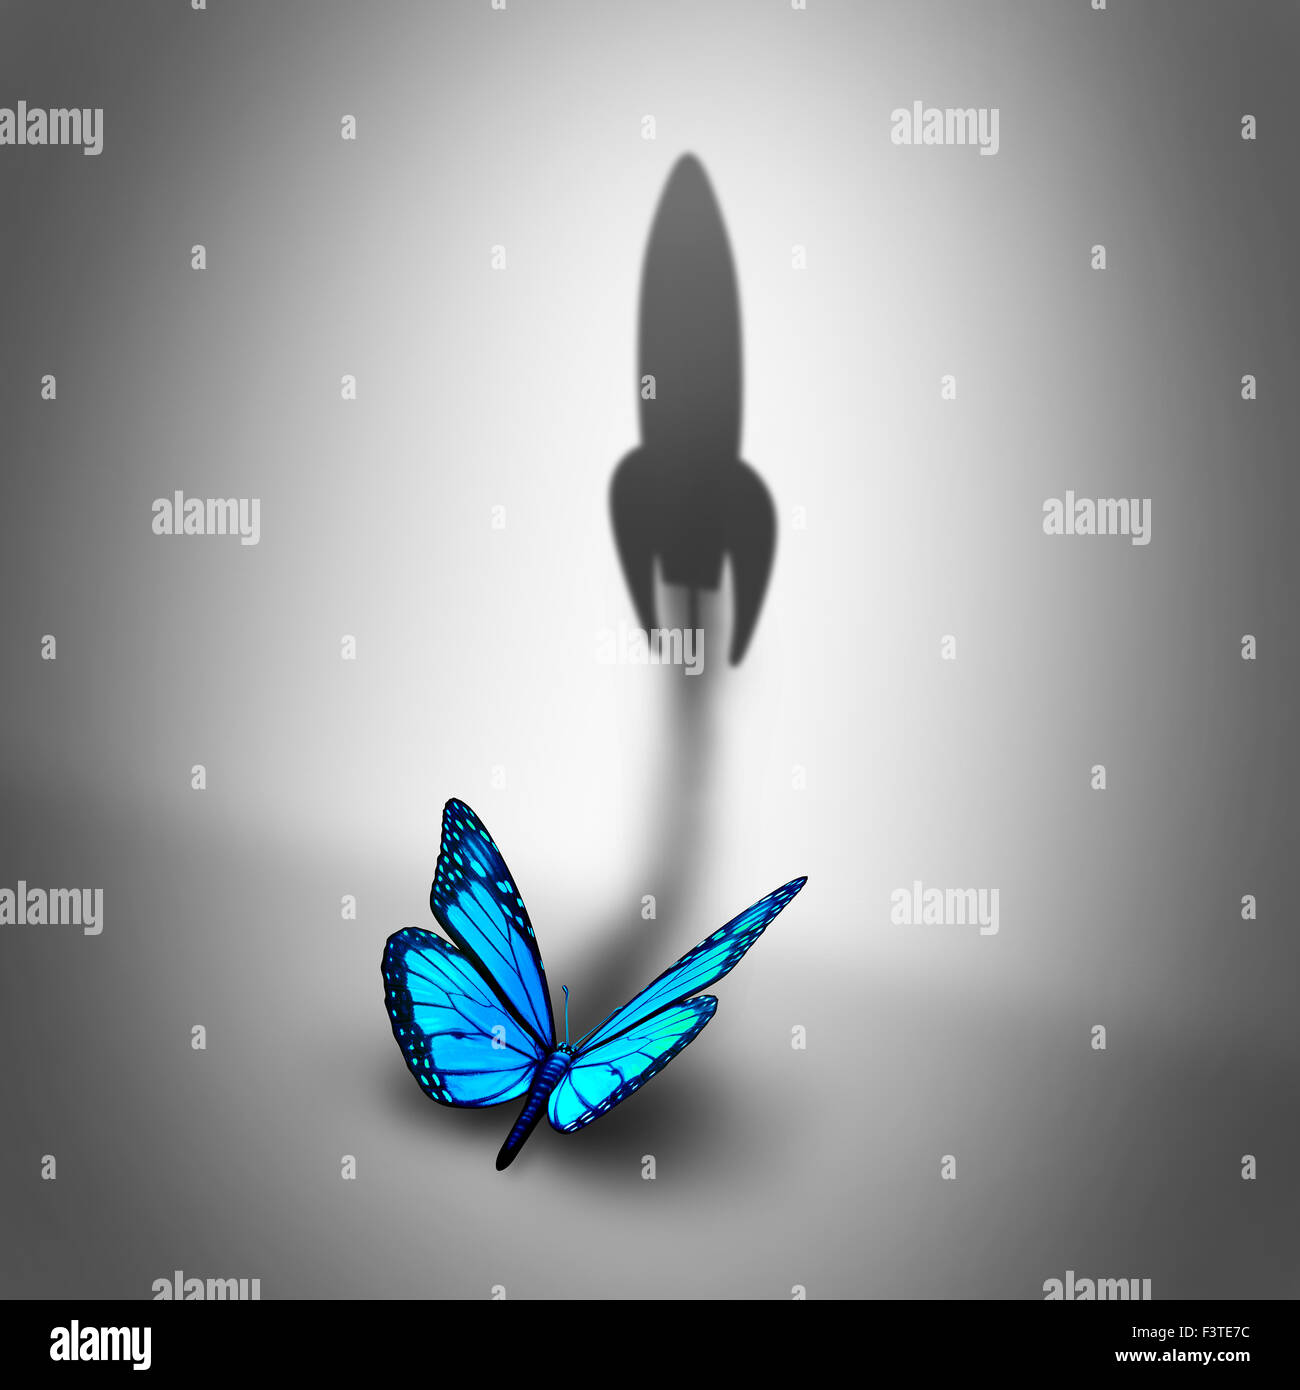 Concepto de negocio Aspiración energía y motivación determina el símbolo como una mariposa azul una sombra con forma de un cohete despegar como un éxito potencial metáfora. Foto de stock